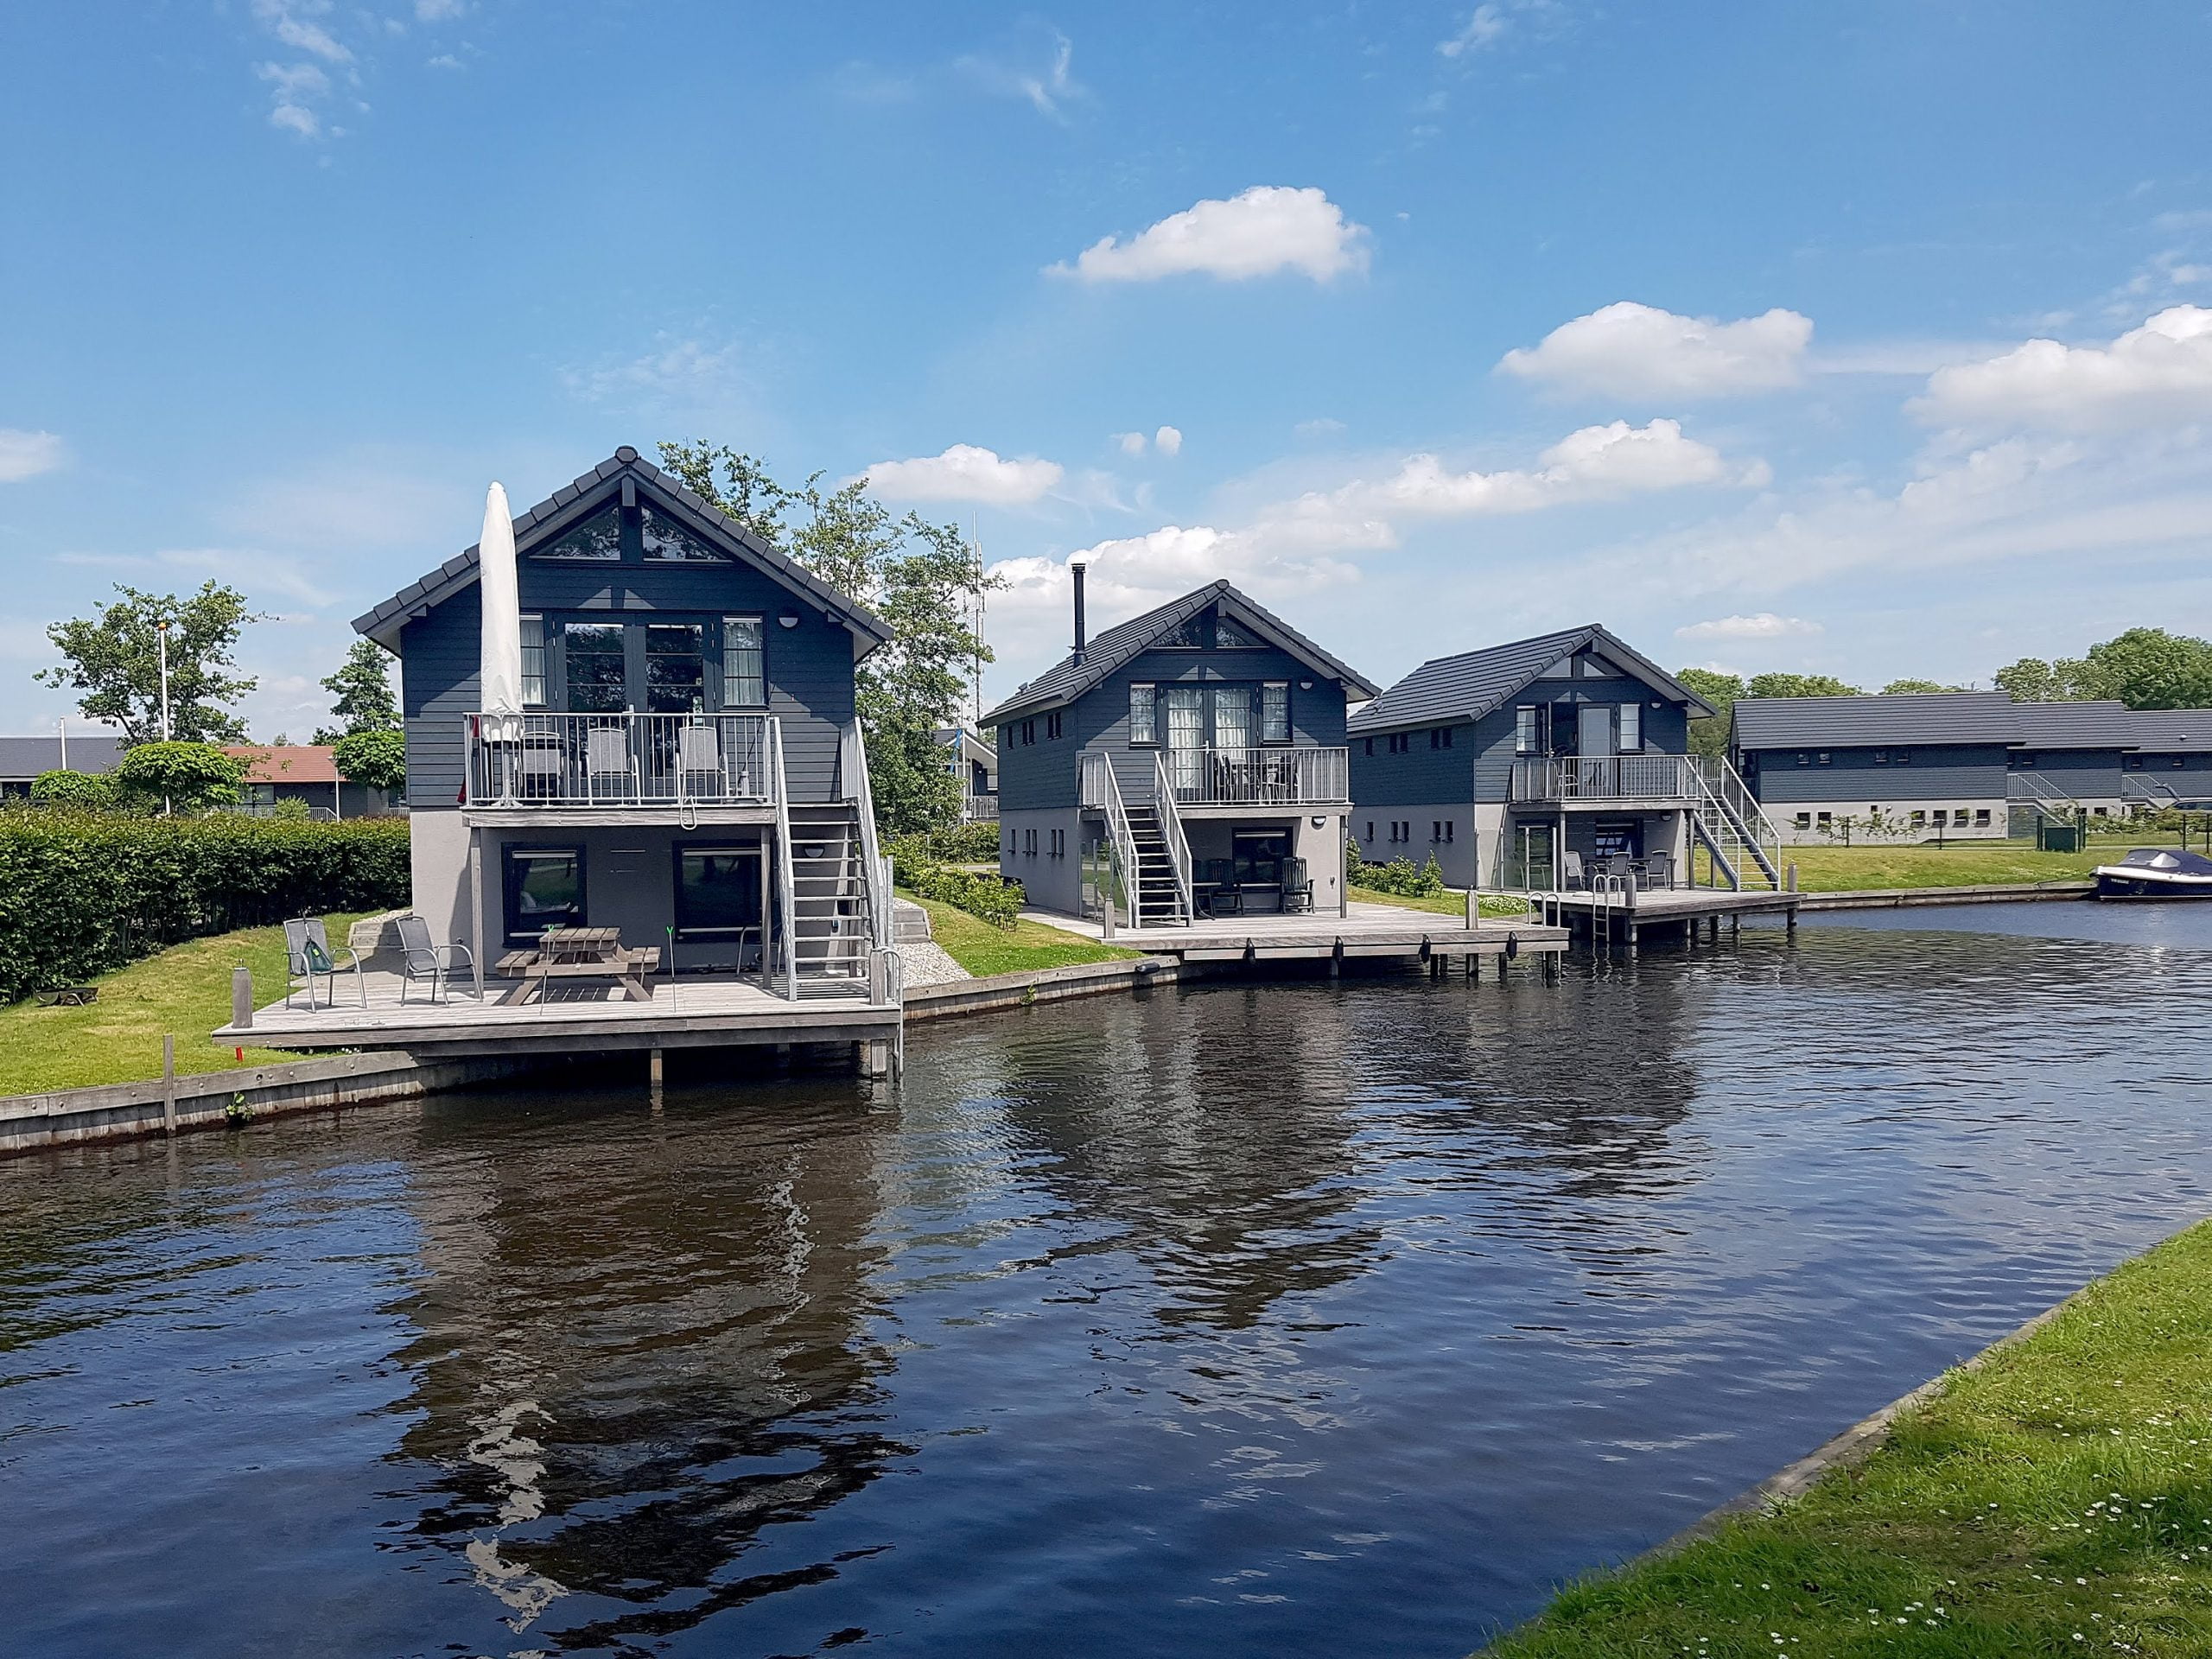 Vakantieparken in Nederland erg populair dit jaar